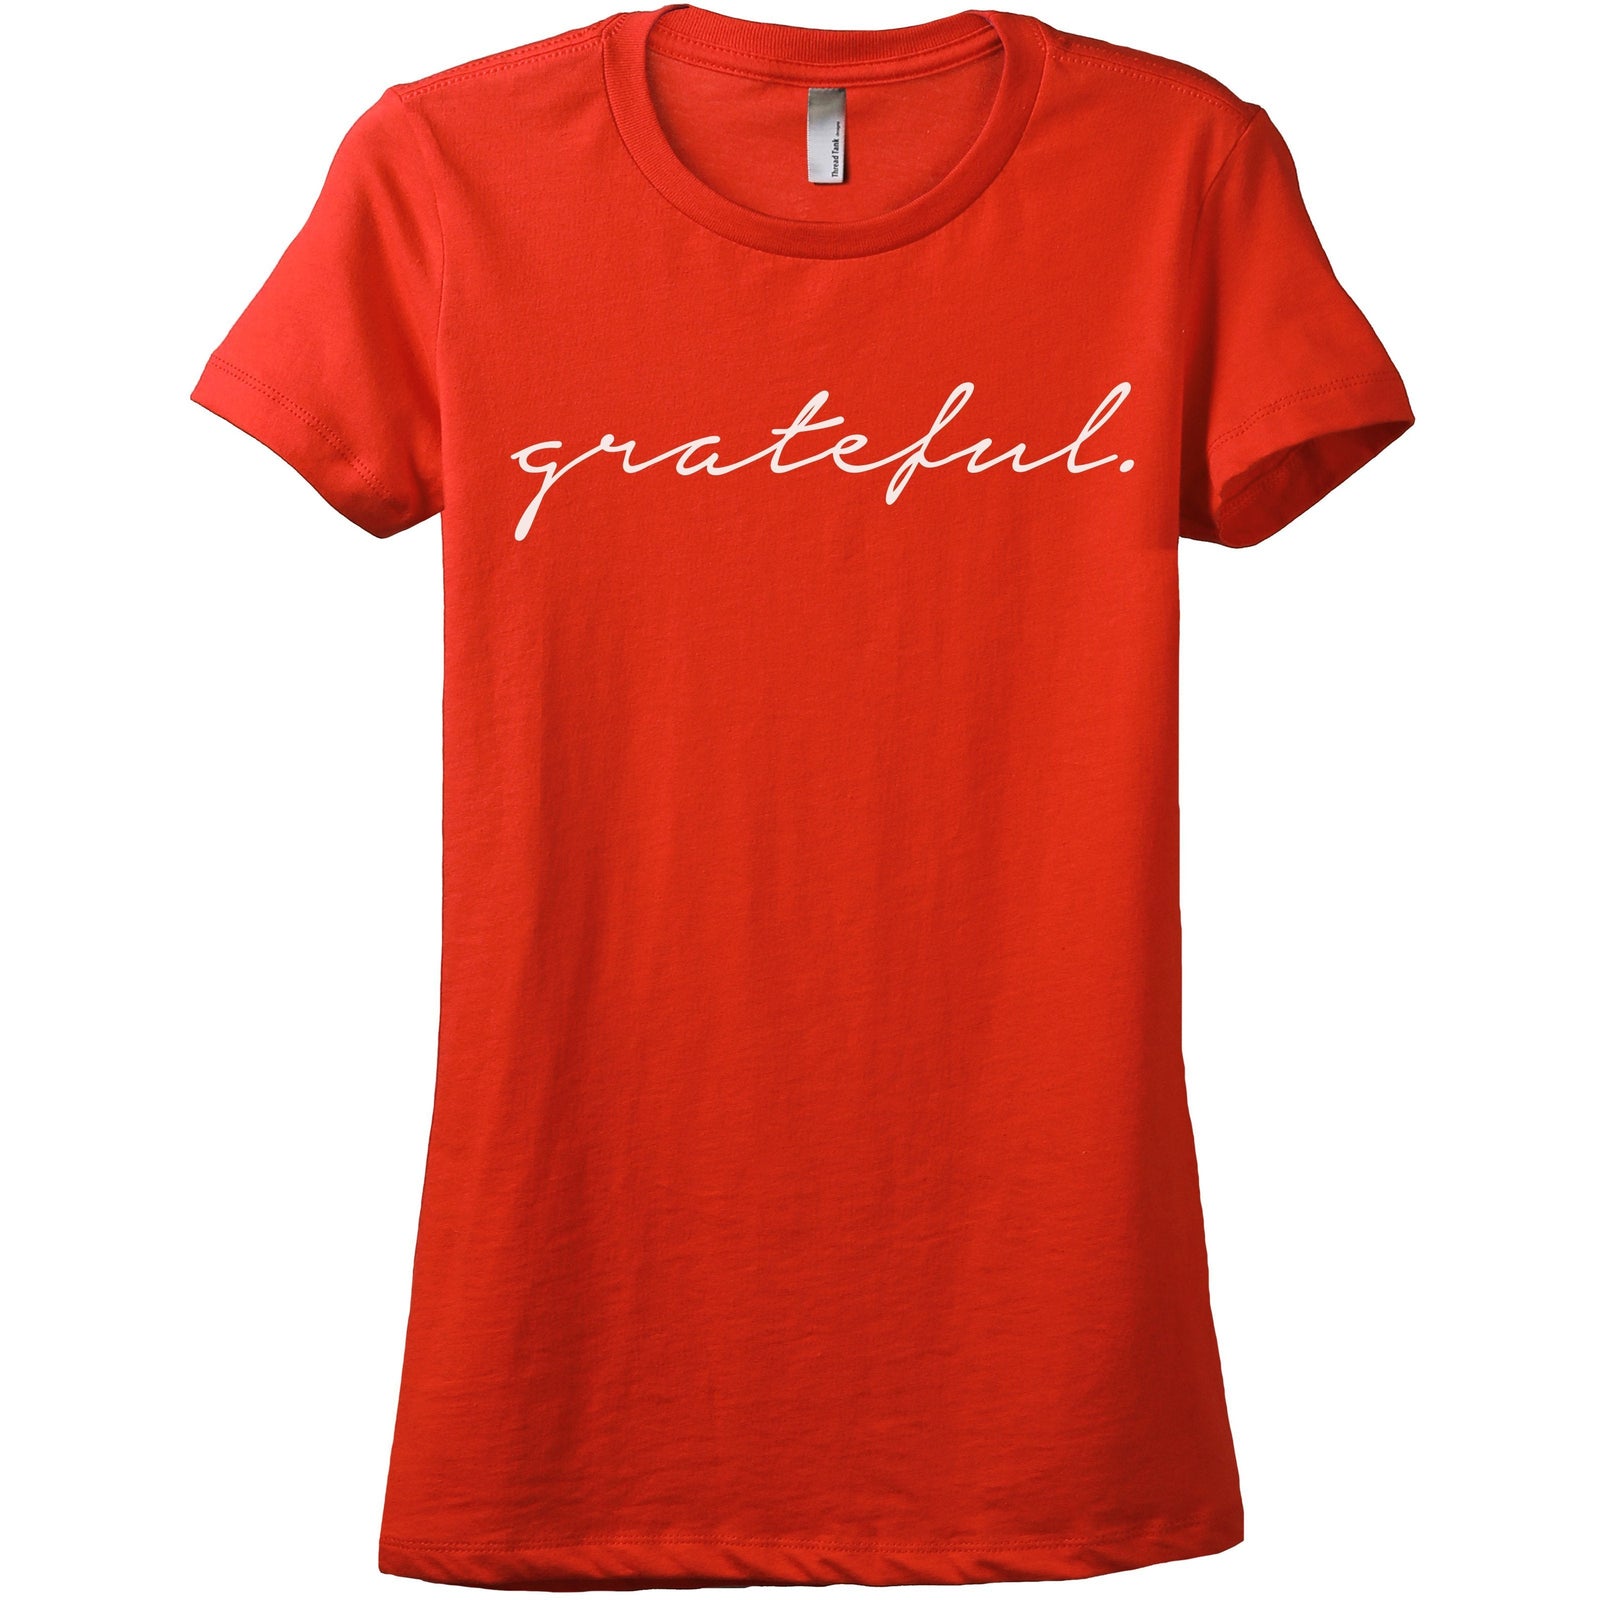 Grateful Women's Relaxed Crewneck T-Shirt Top Tee Poppy
